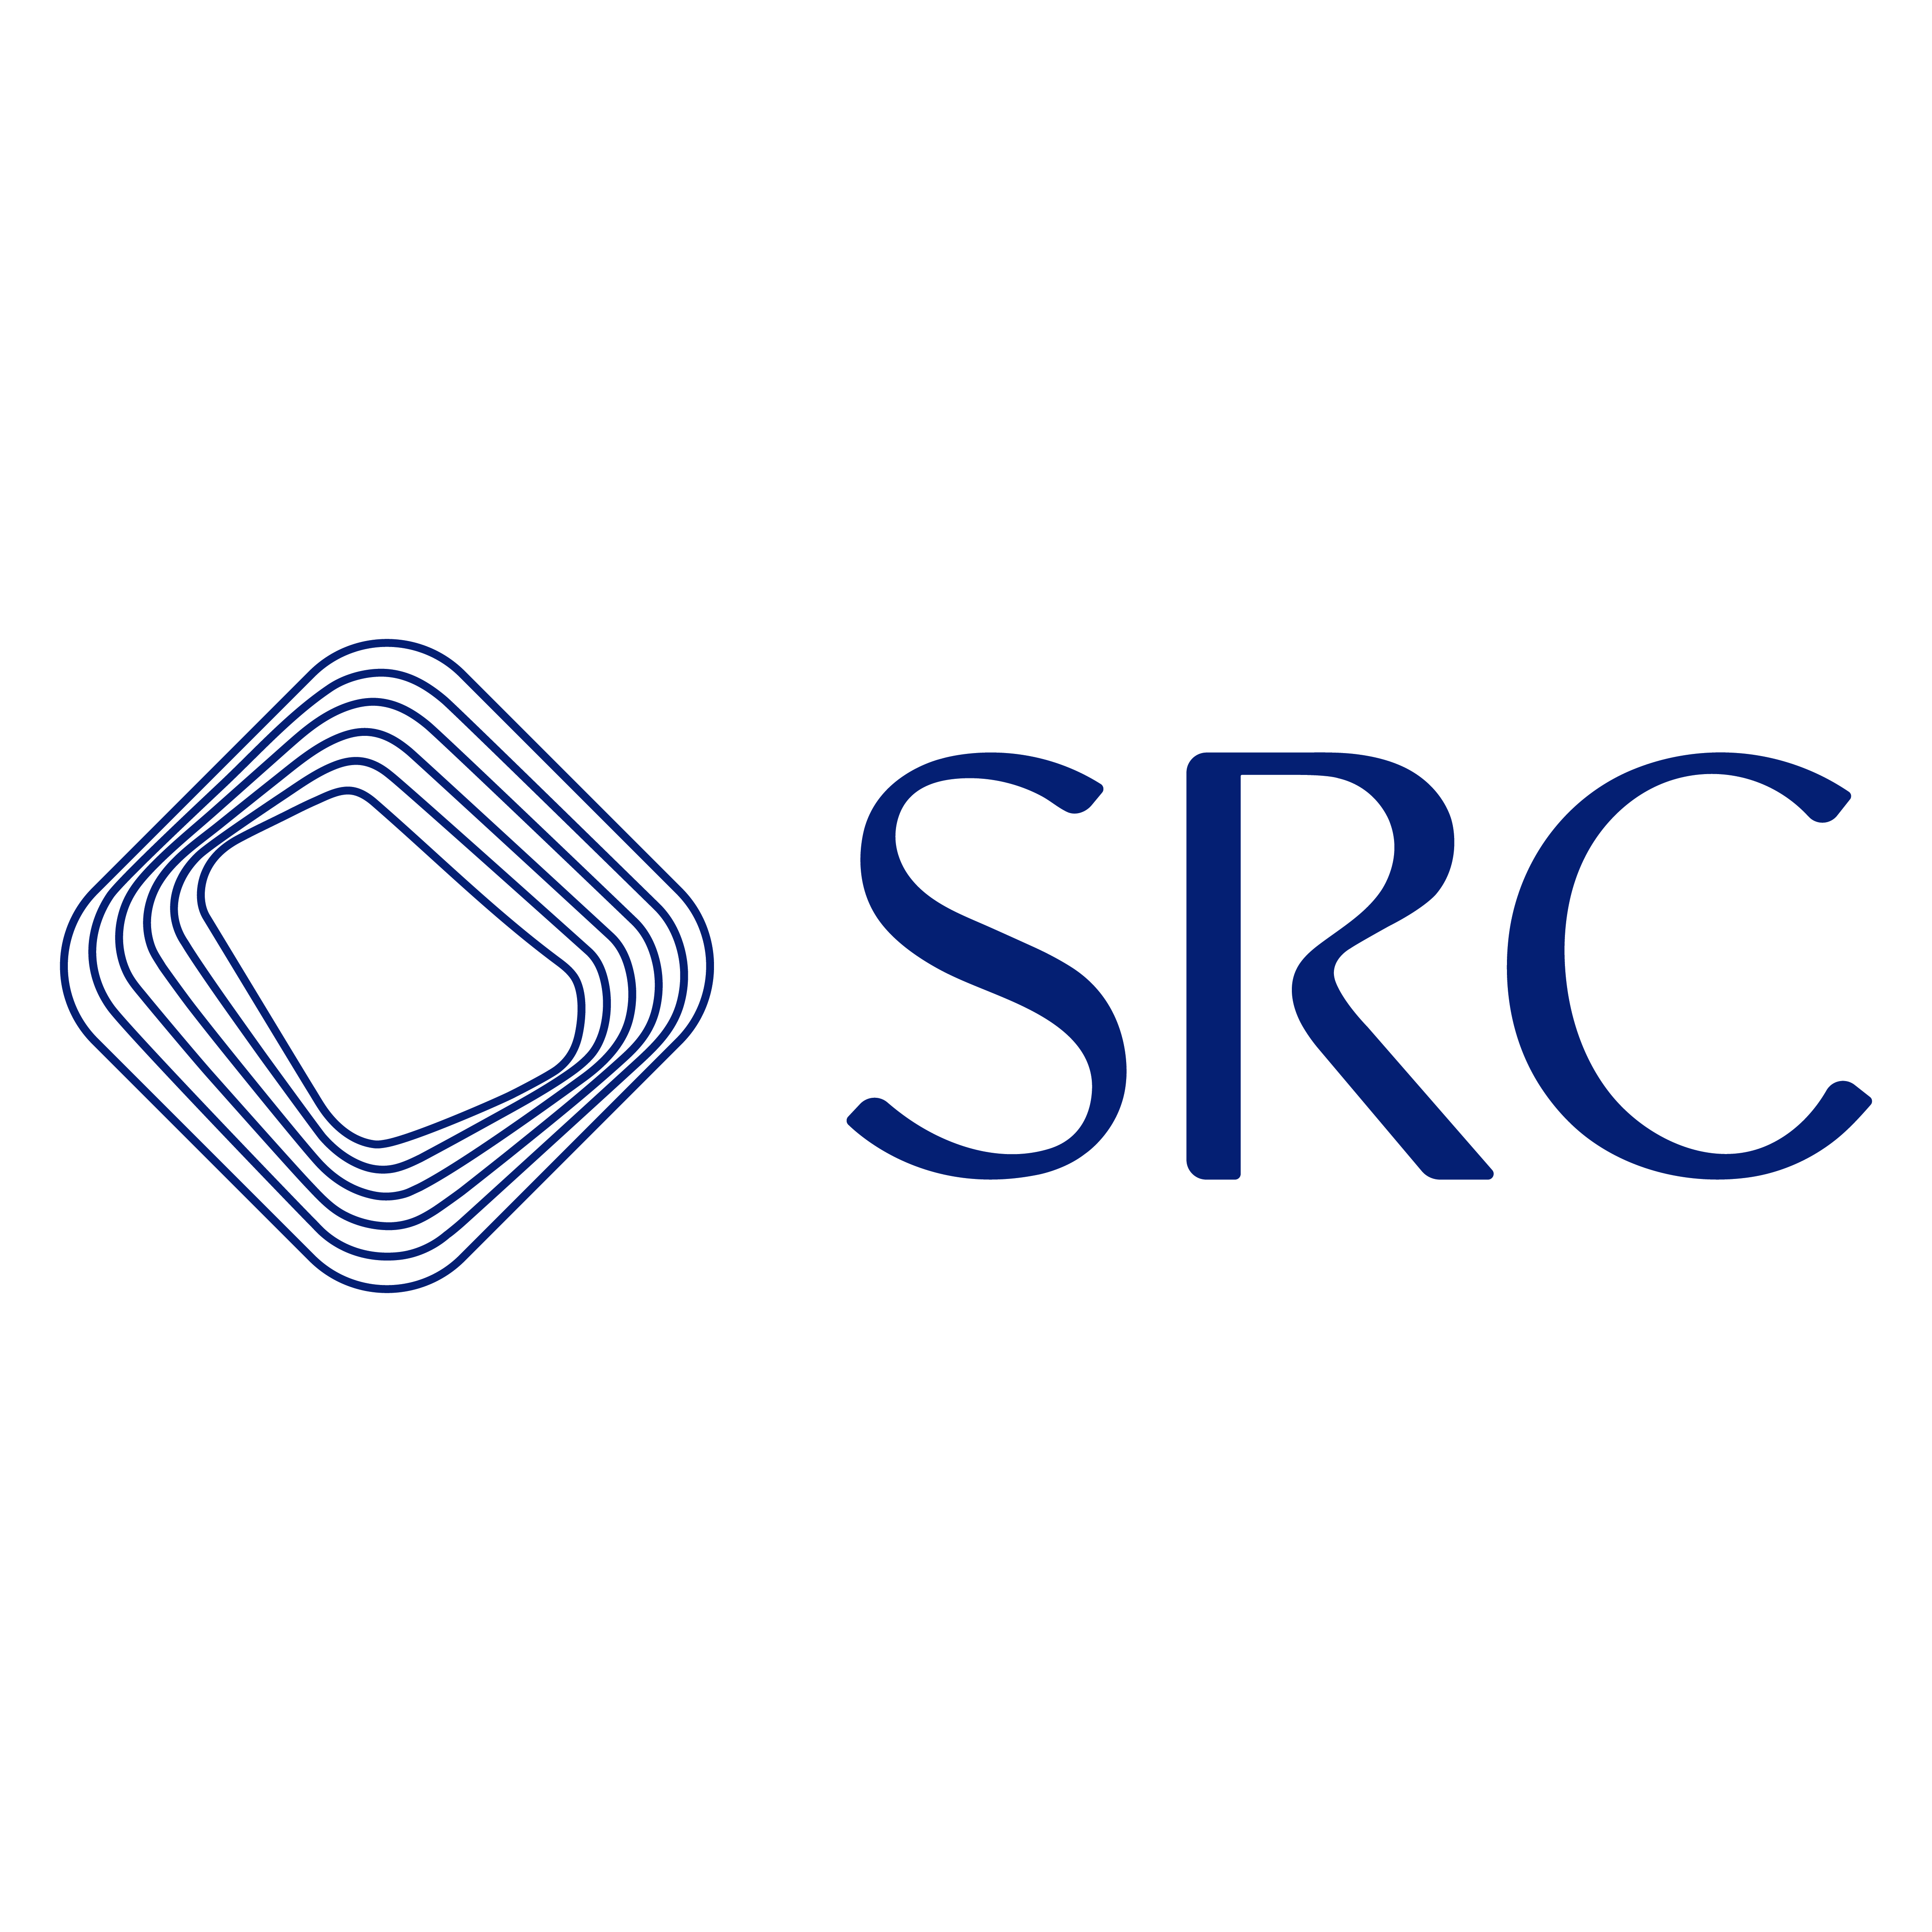 السعودية لإعادة التمويل العقاري (SRC) تستكمل برنامجها للصكوك المحلية بقيمة 3,5 مليار ريال سعودي